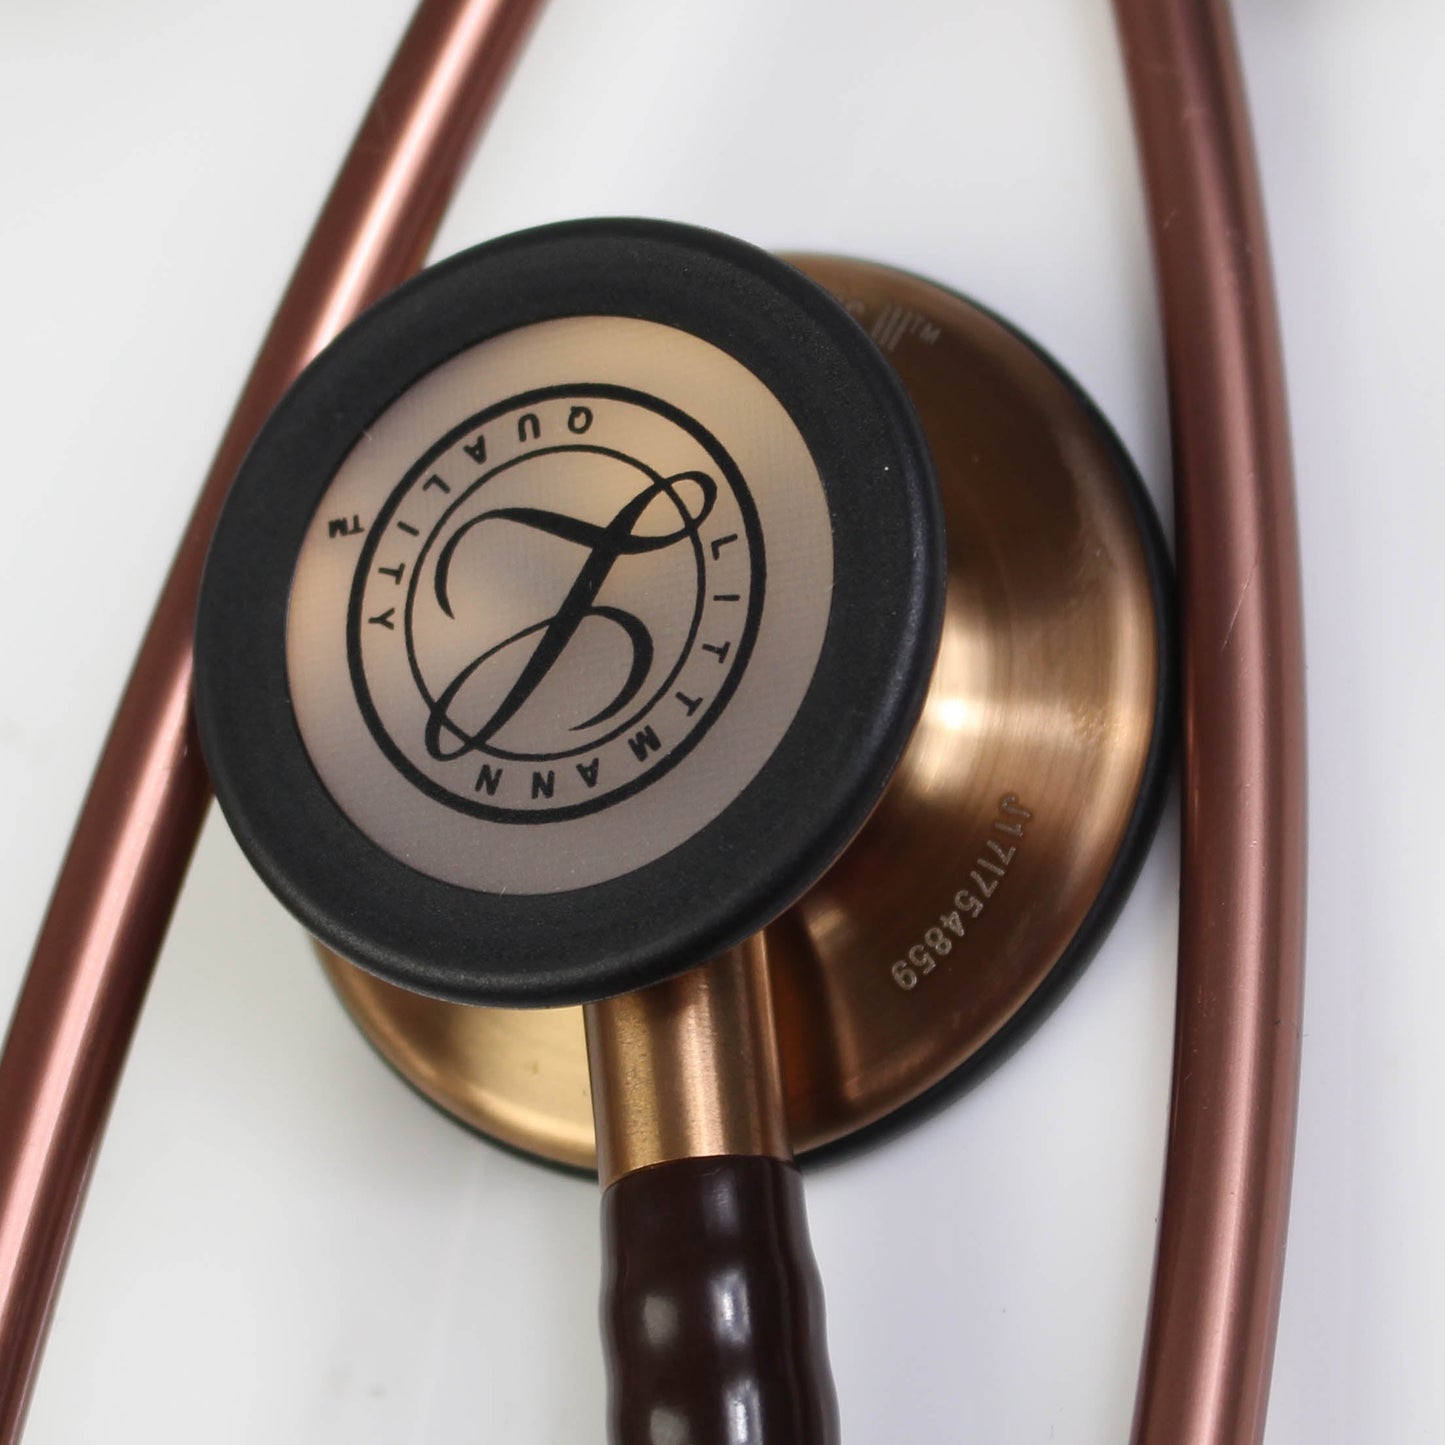 Stetoskop 3M™ Littmann® Classic III™ Monitoring, bakrena obdelava membranskega nastavka, čokoladno rjava cev, 68,5 cm, 5809